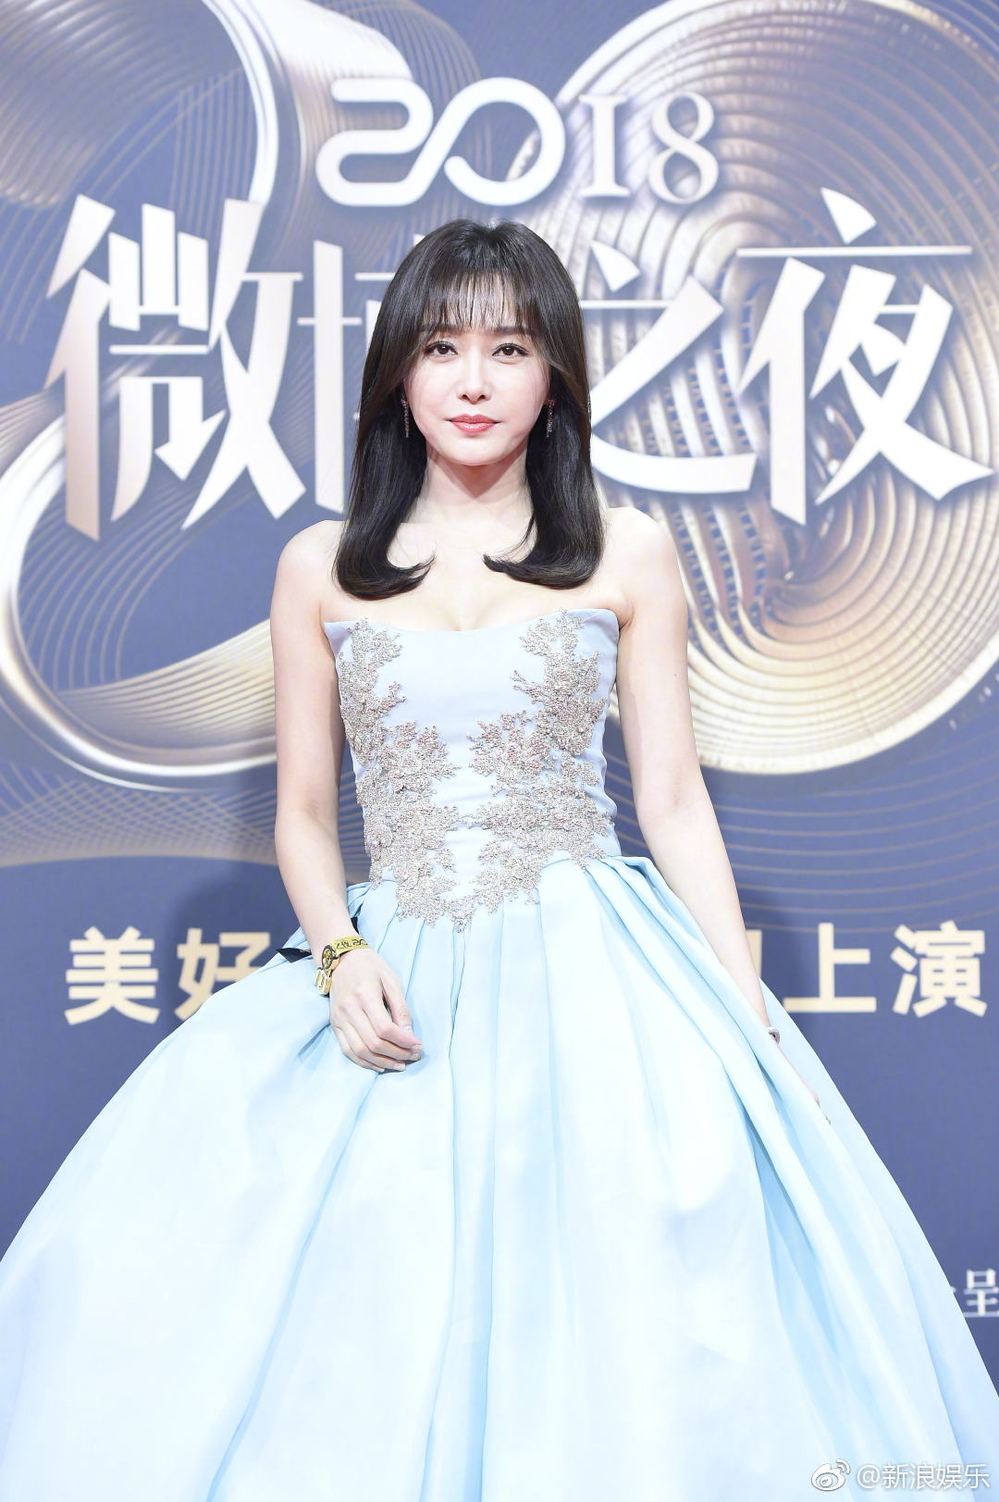  
Tần Lam chịu "hở" để khoe vòng 1 căng đầy giữa thời tiết lạnh giá thế nhưng nữ diễn viên bị chê xuống sắc, lộ dấu hiệu tuổi tác.